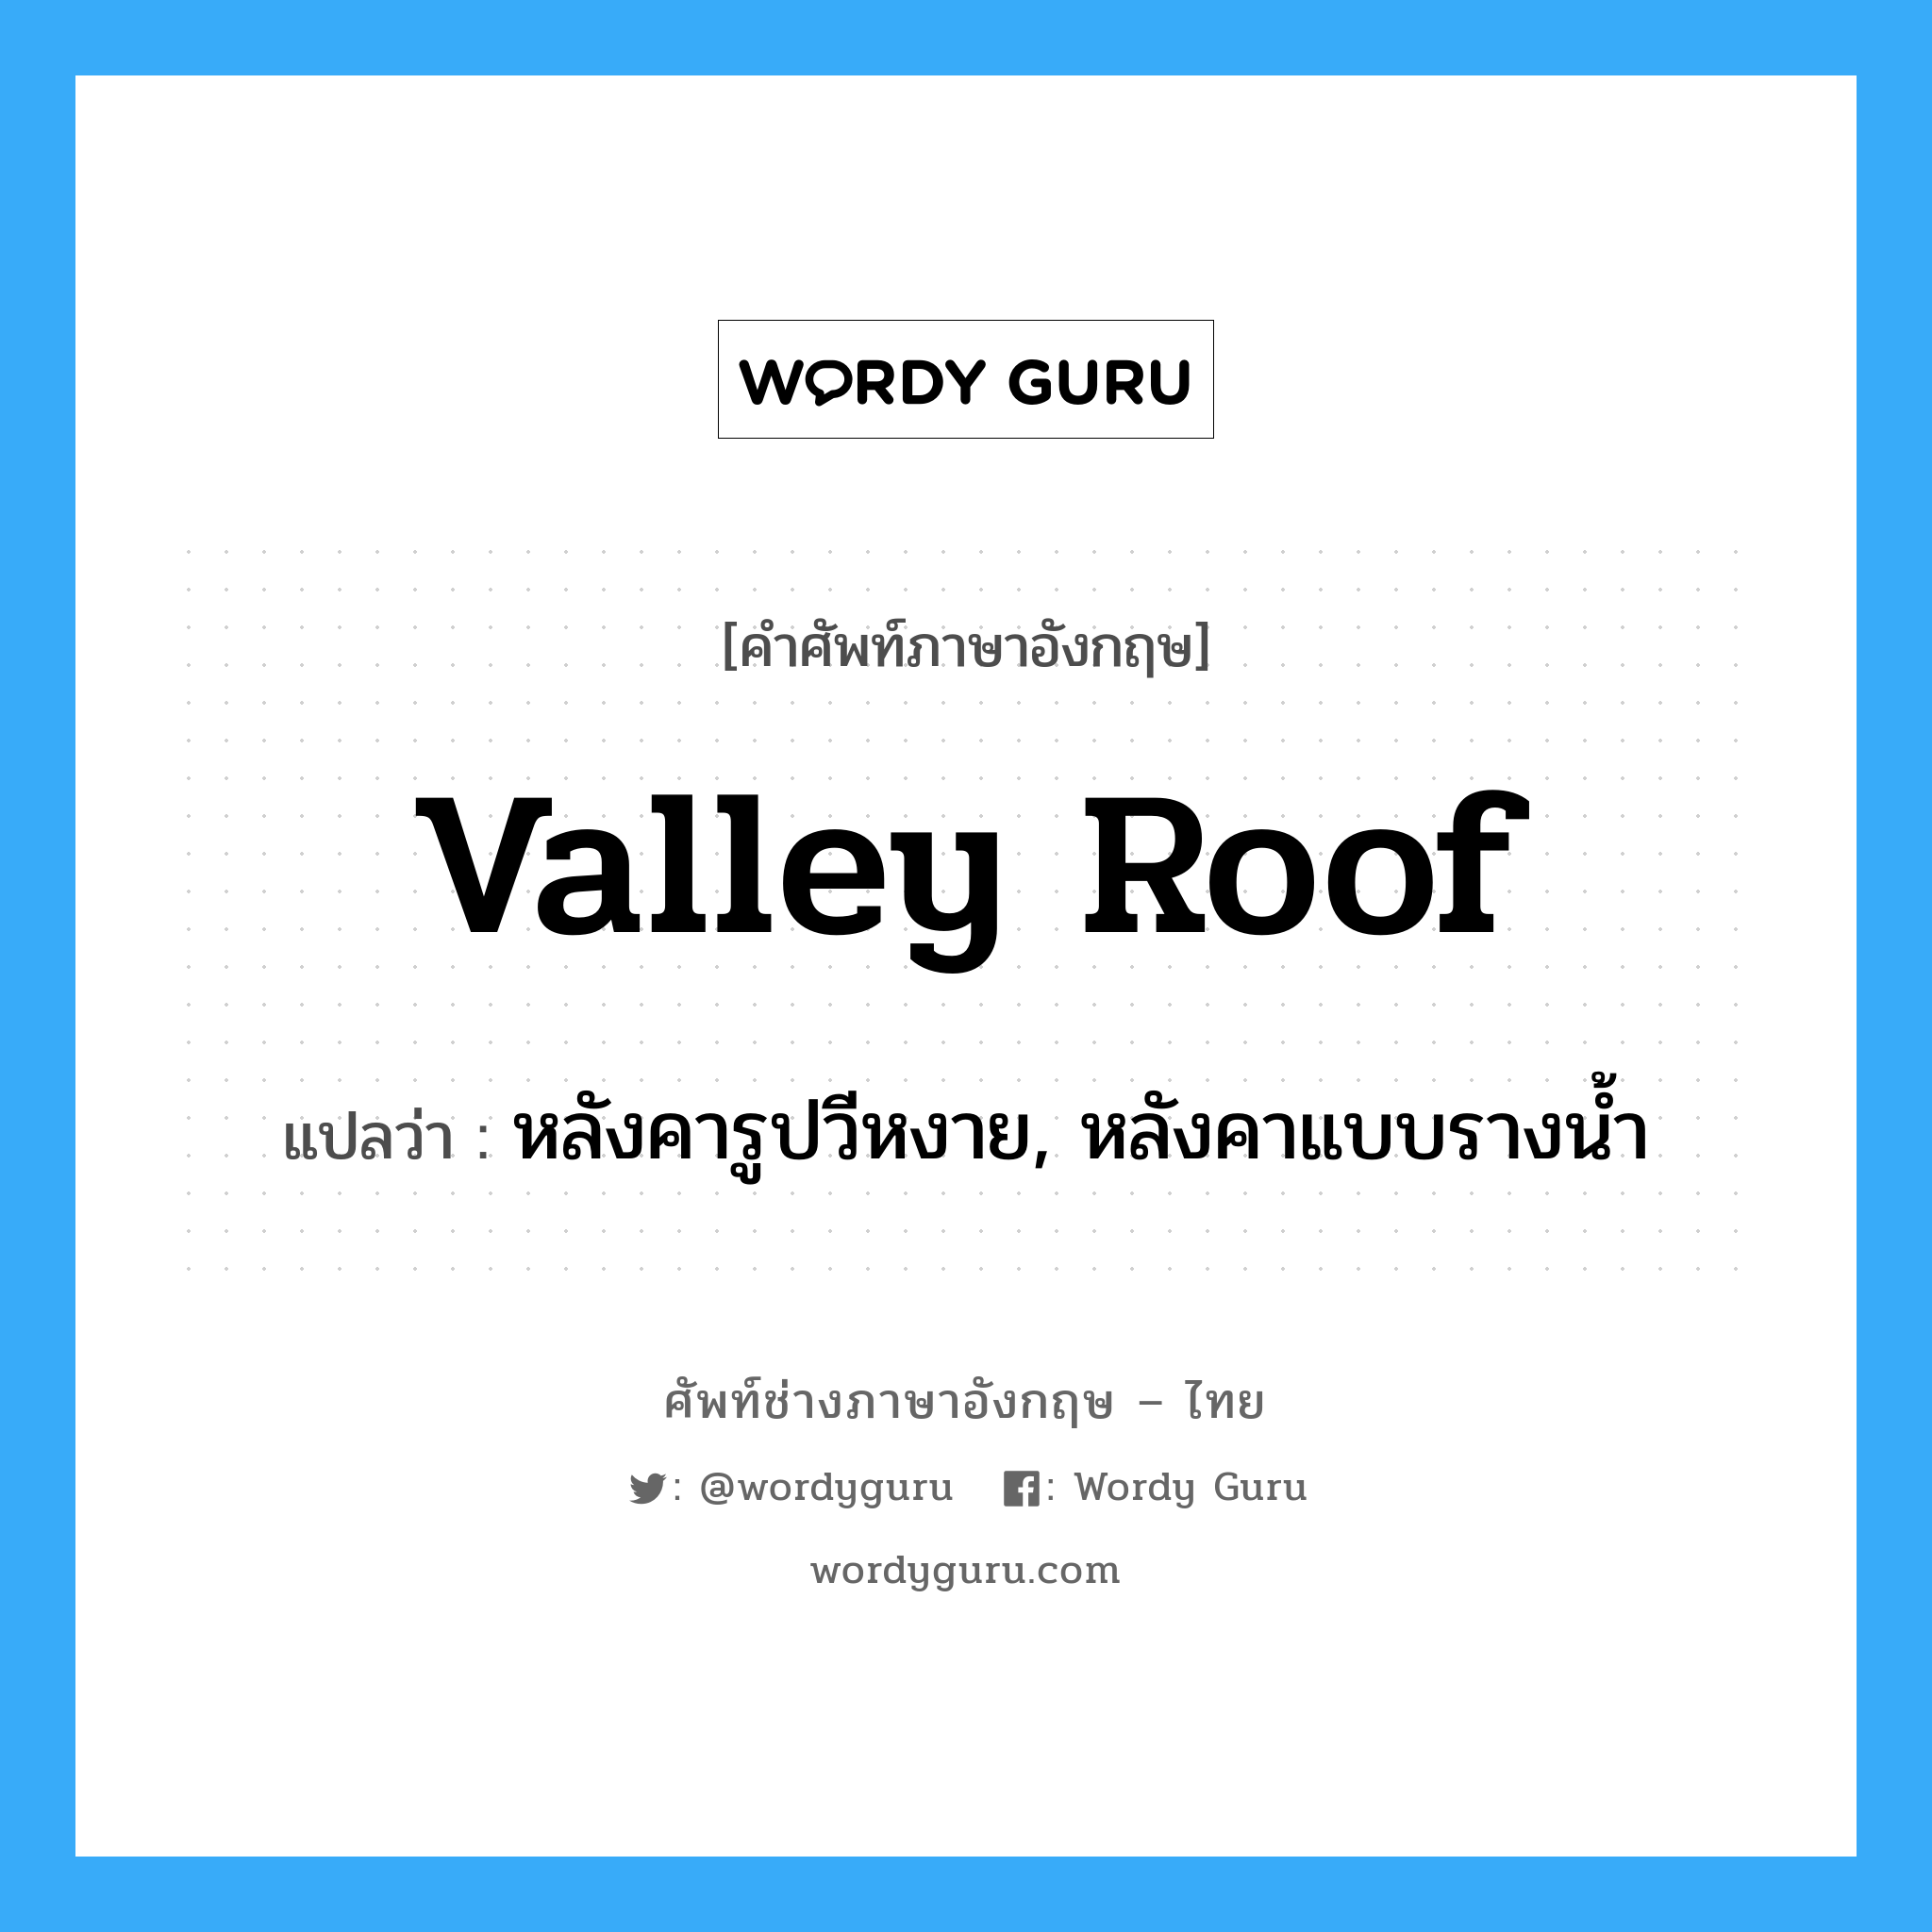 valley roof แปลว่า?, คำศัพท์ช่างภาษาอังกฤษ - ไทย valley roof คำศัพท์ภาษาอังกฤษ valley roof แปลว่า หลังคารูปวีหงาย, หลังคาแบบรางน้ำ